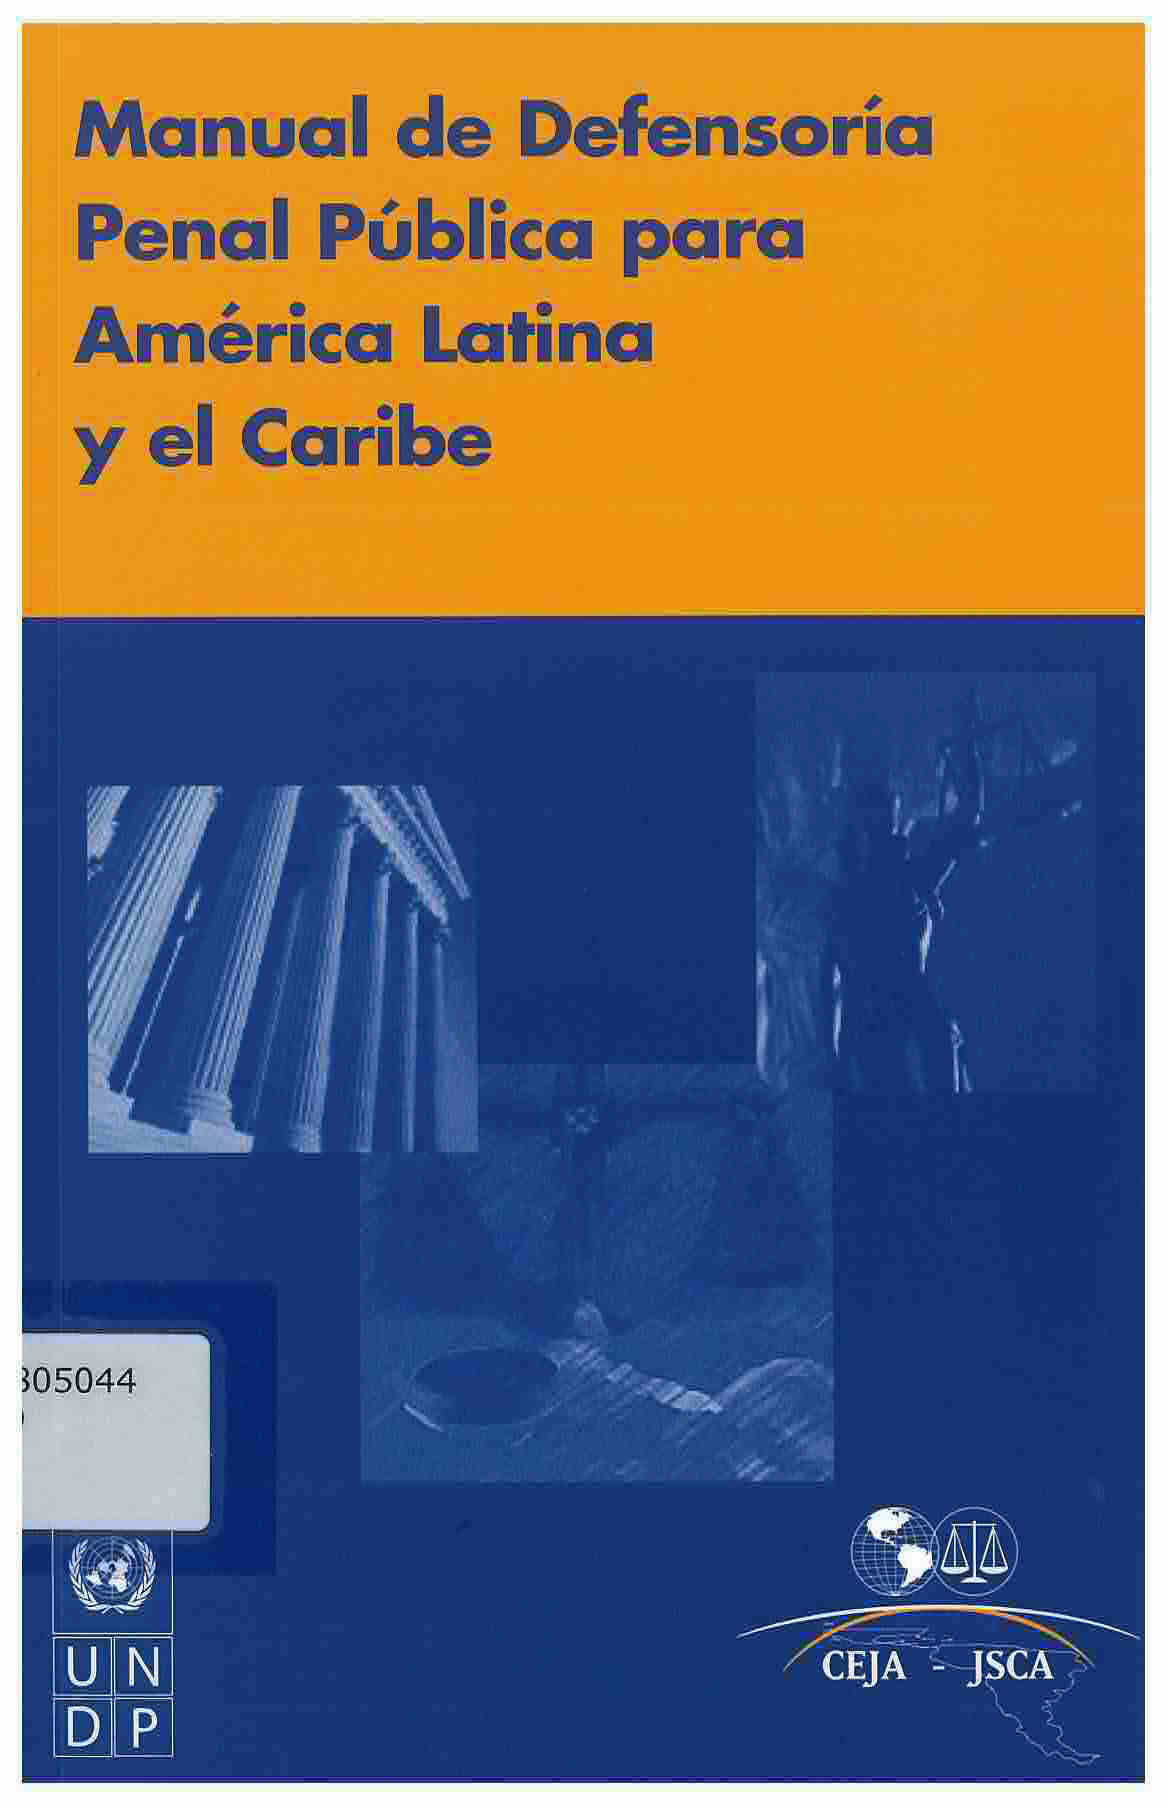 Manual de defensoría penal pública para América latina y el Caribe